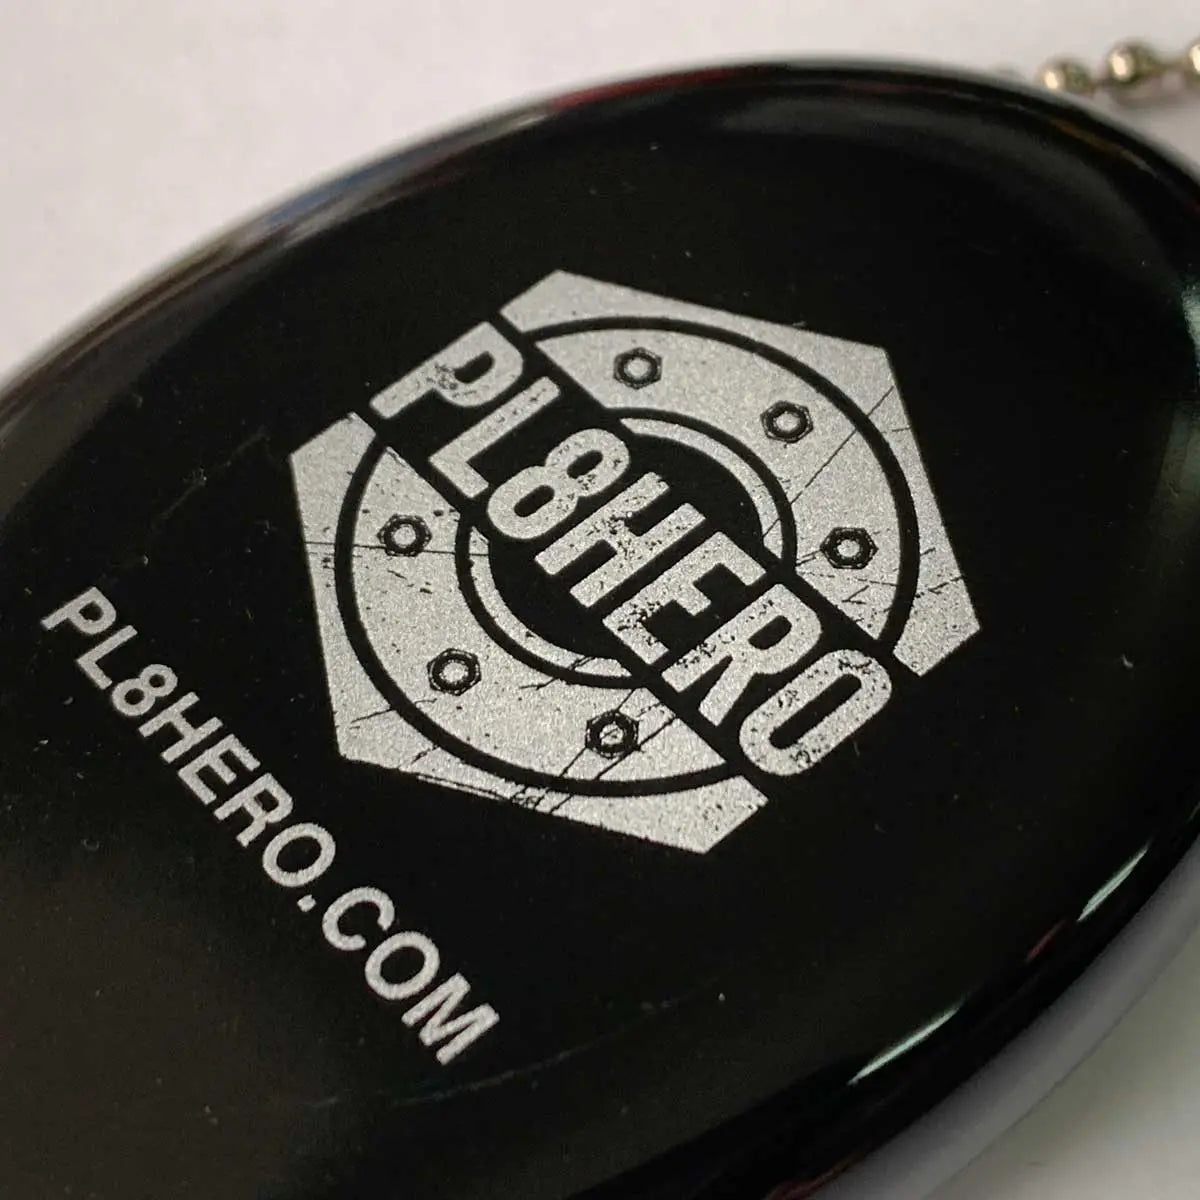 PL8HEROオリジナルコインケース・アメリカ製Quikoin・ブラック PL8HERO